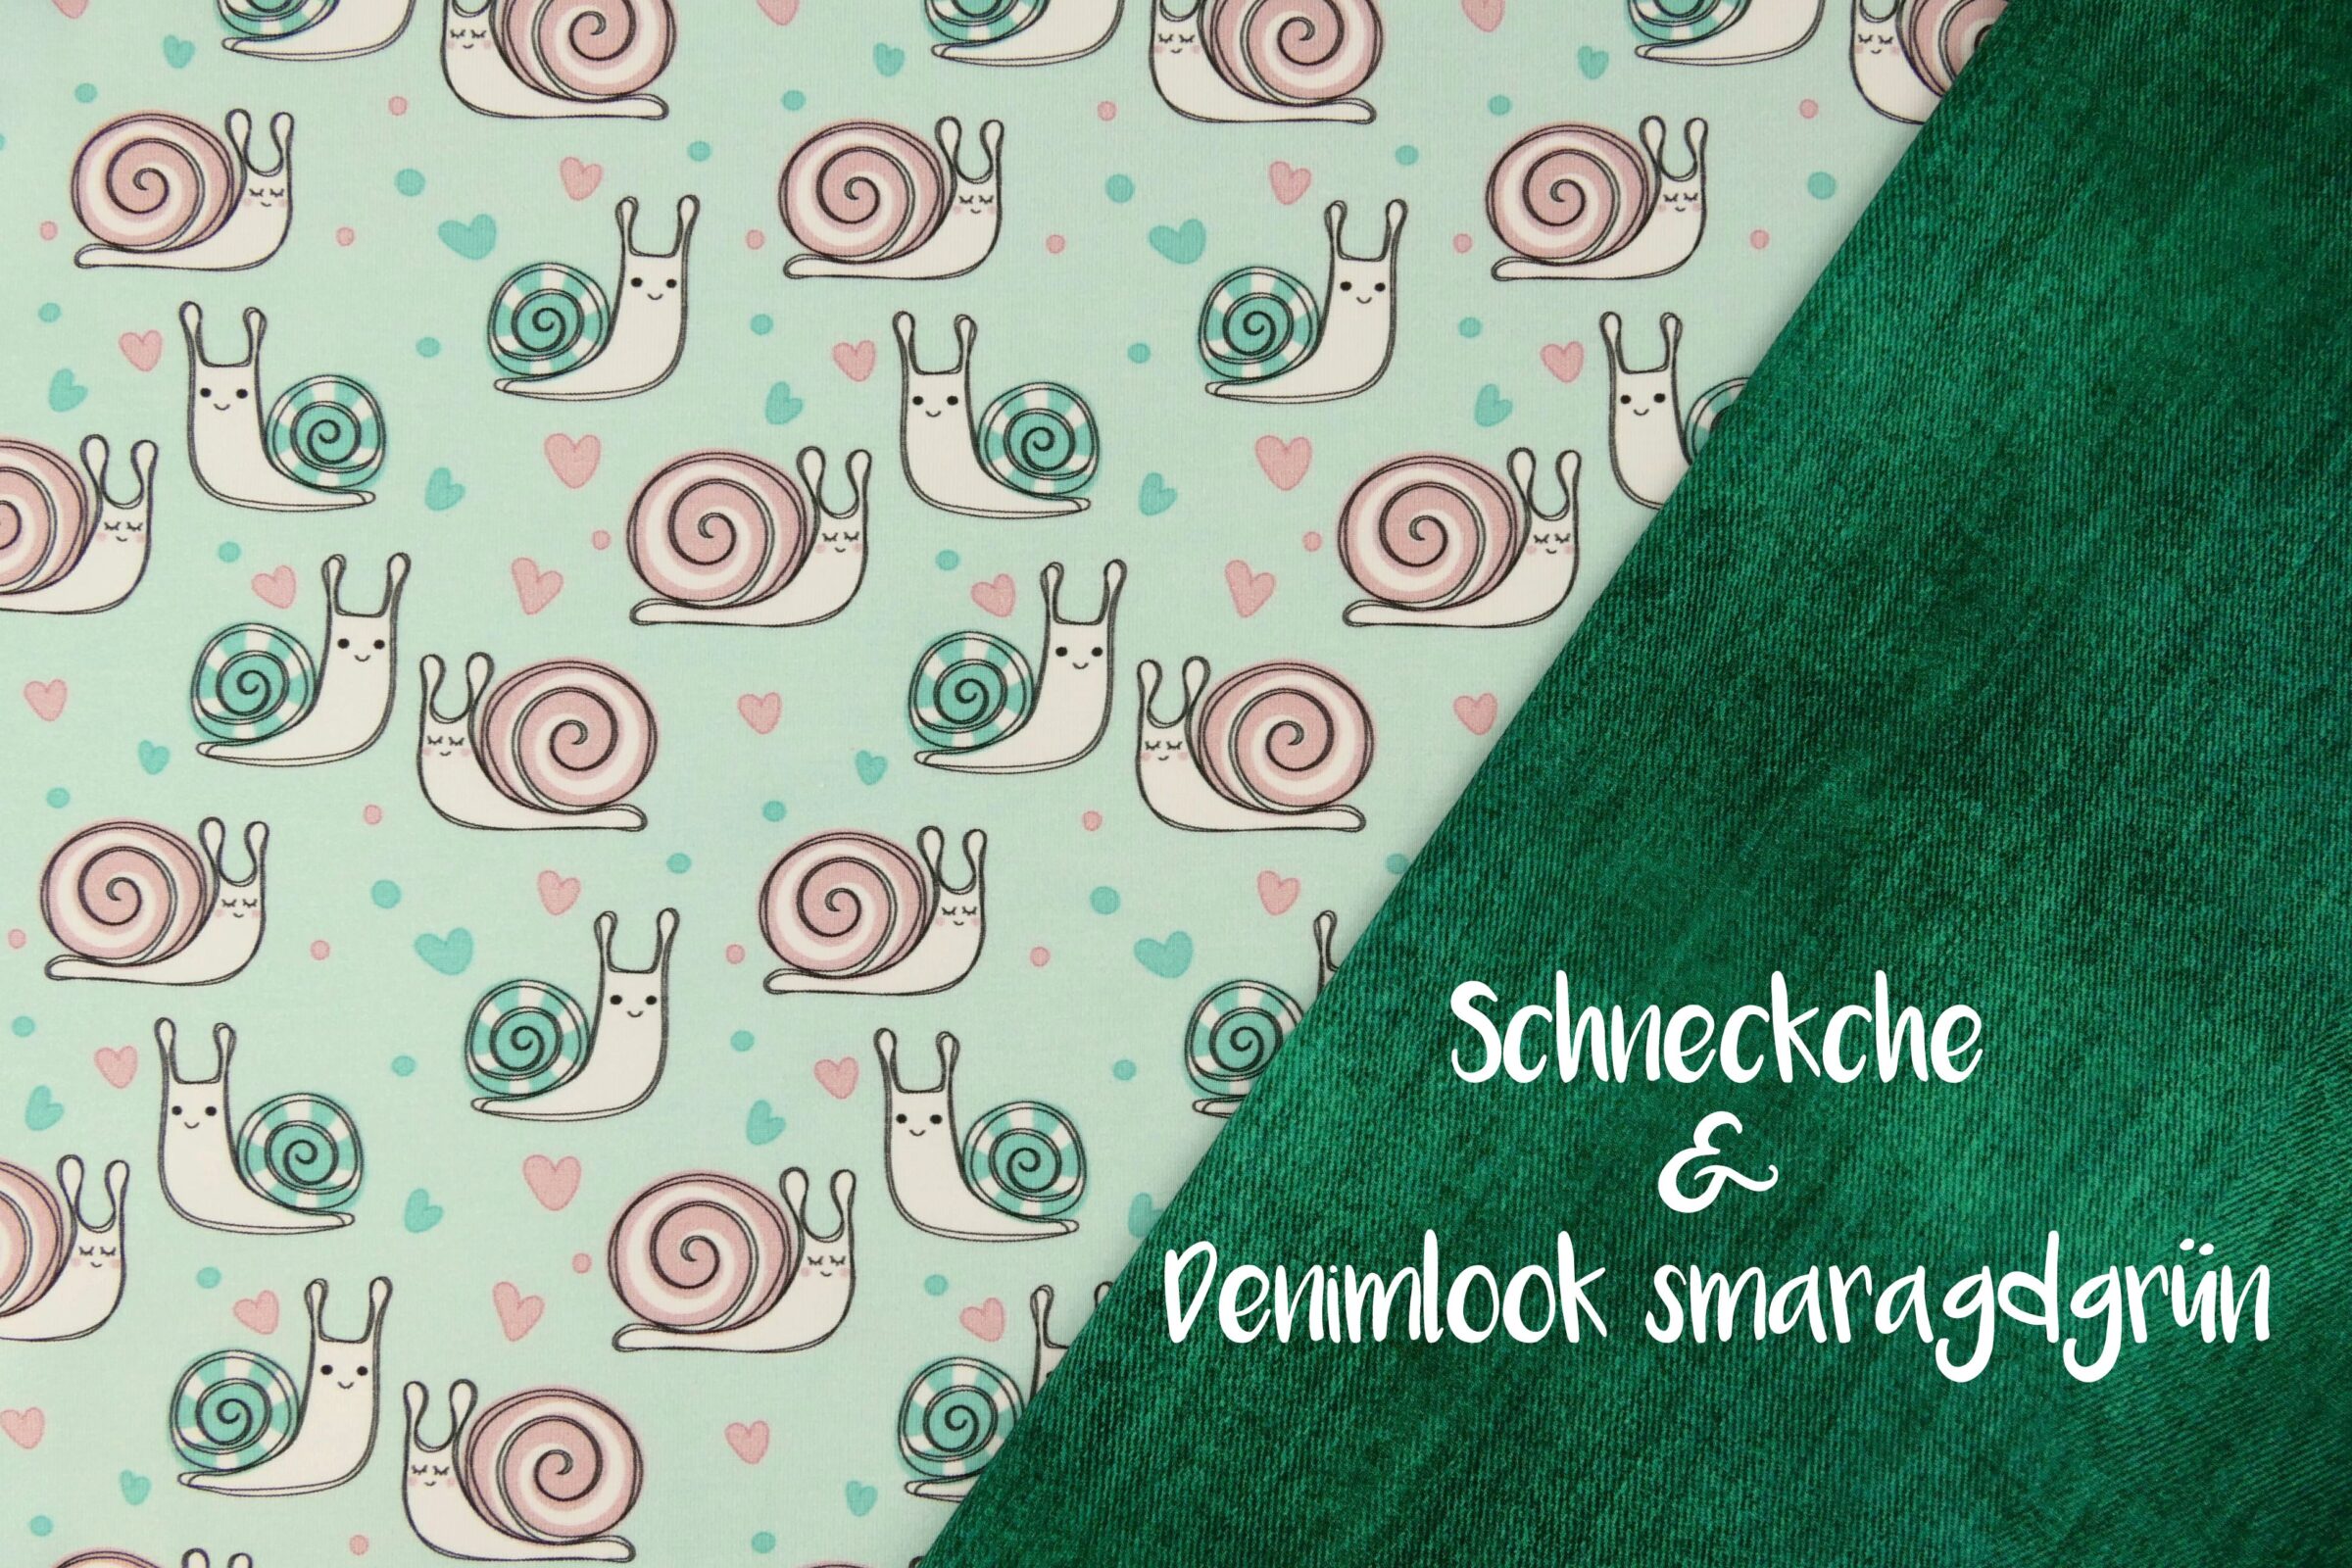 Schneckche + Denimlook smaragdgrün